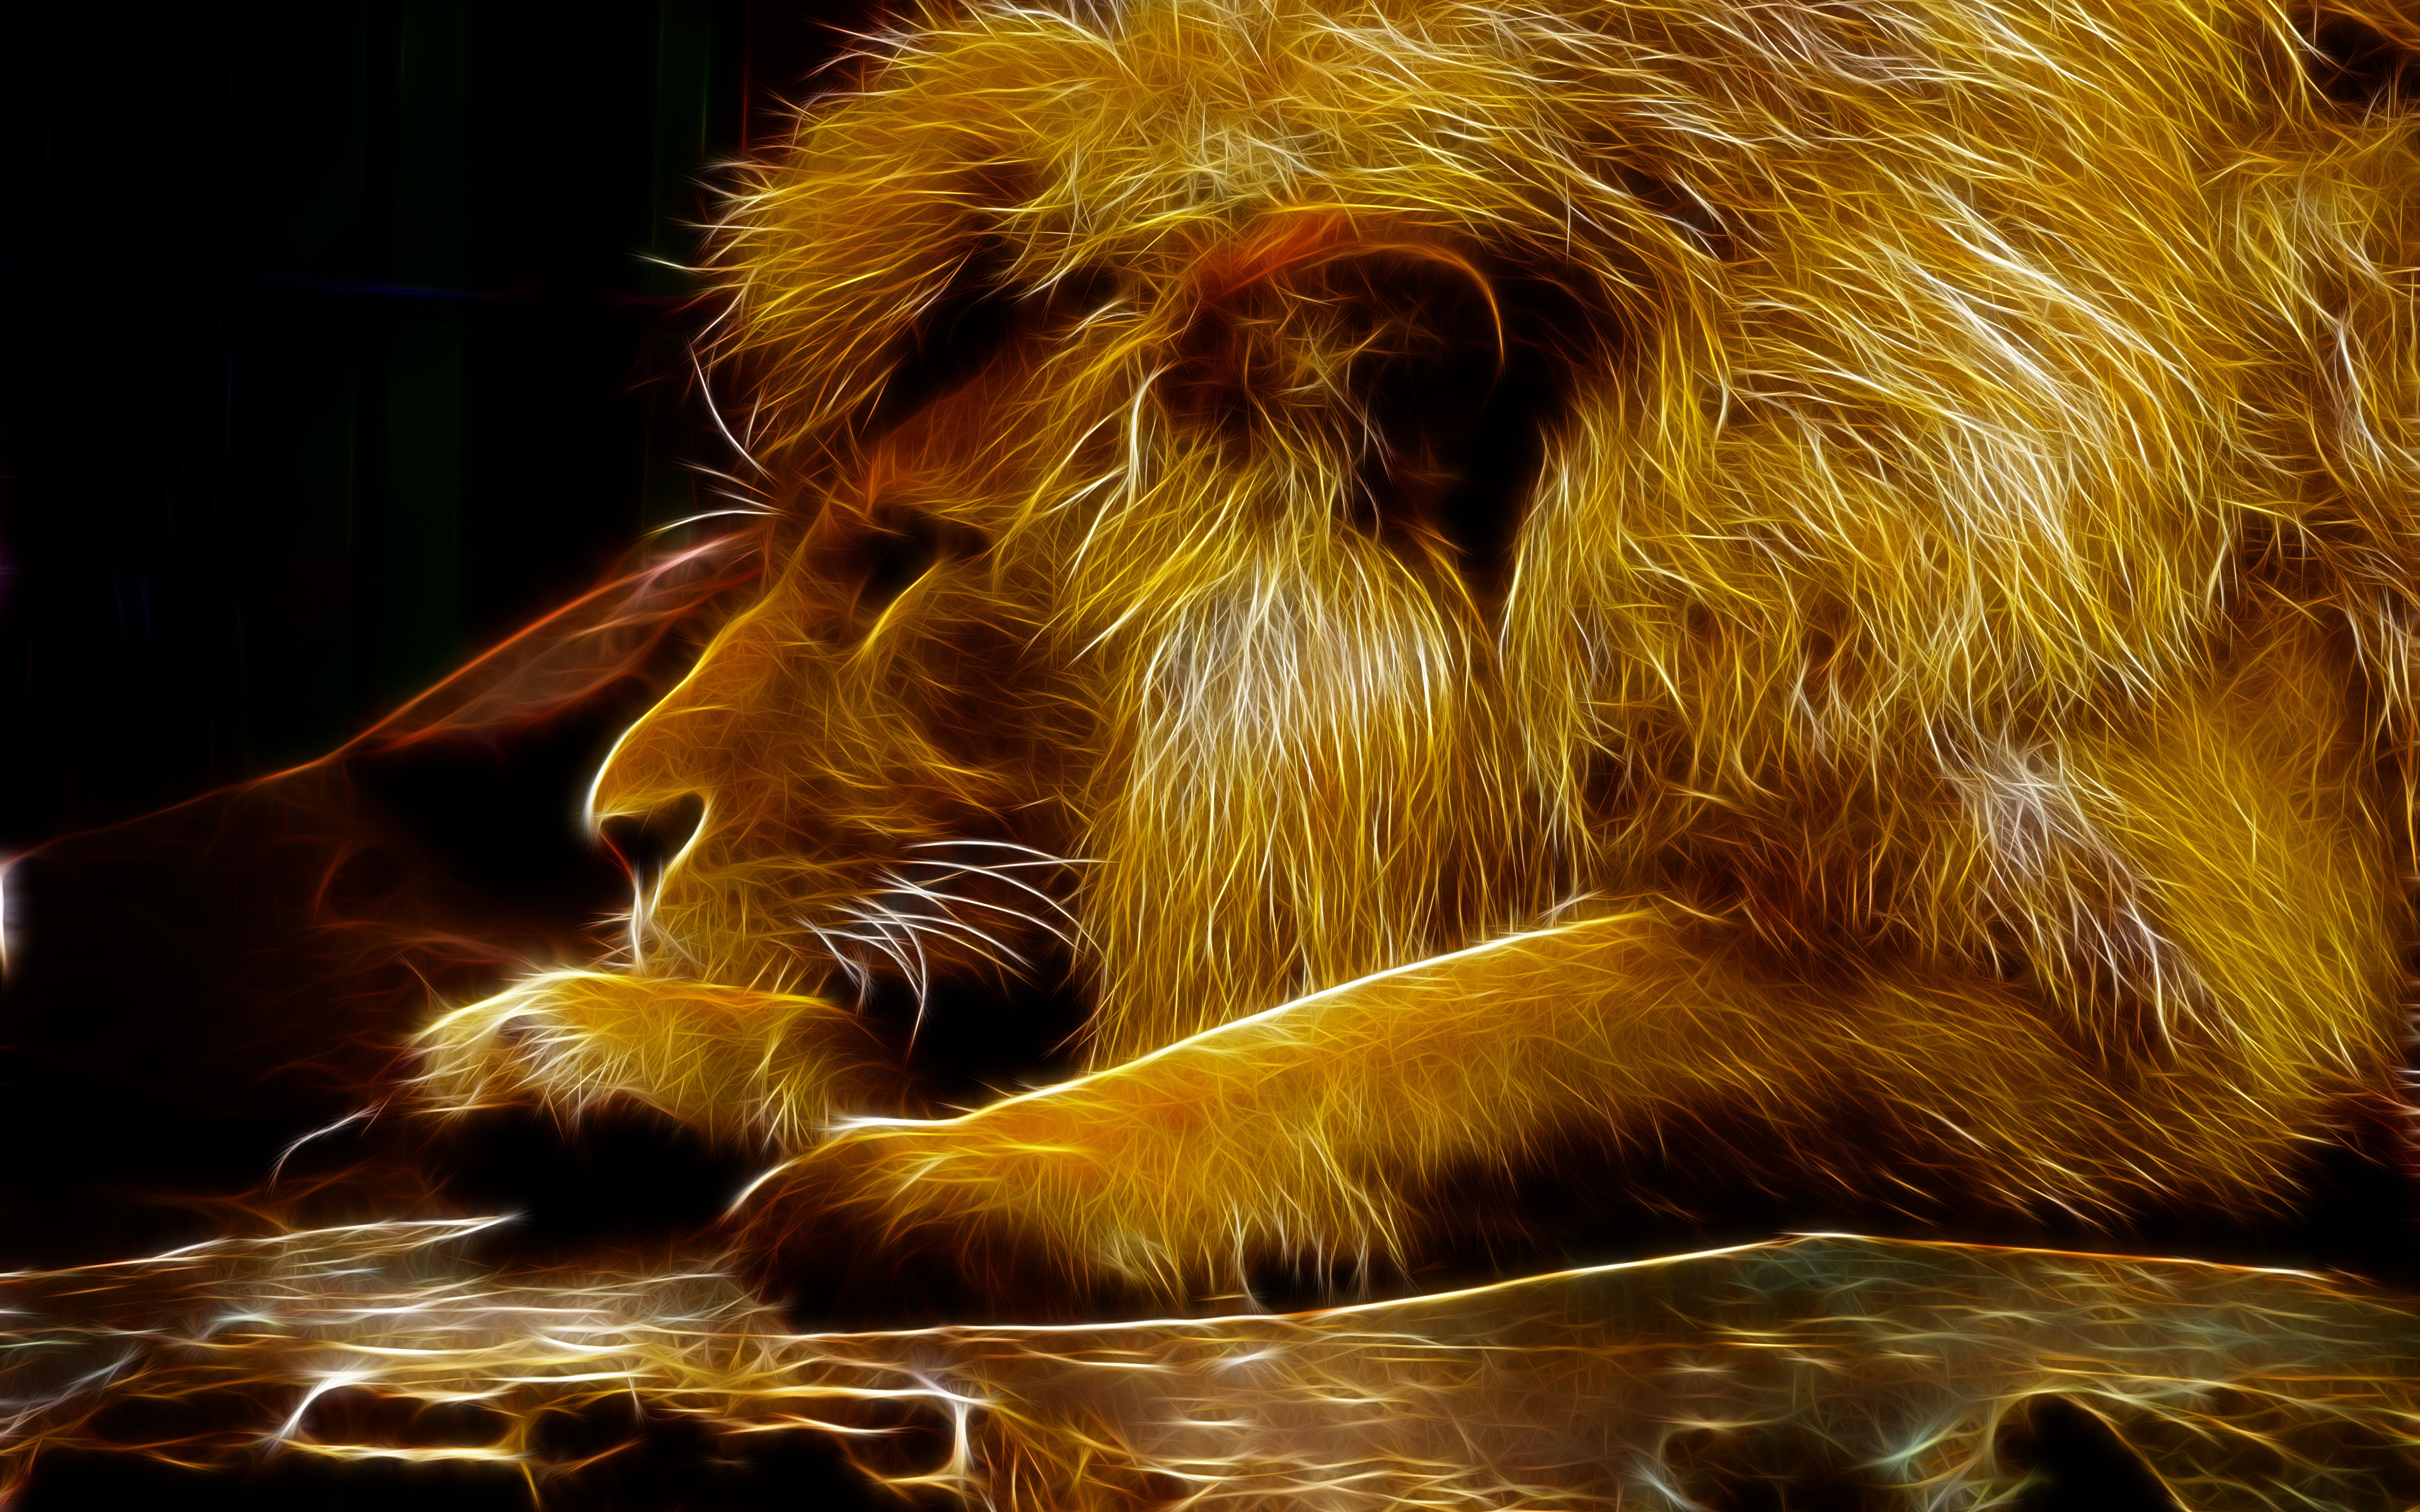 Fondos de Pantalla 3840x2400 Grandes felinos León Animalia 3D Gráficos  descargar imagenes